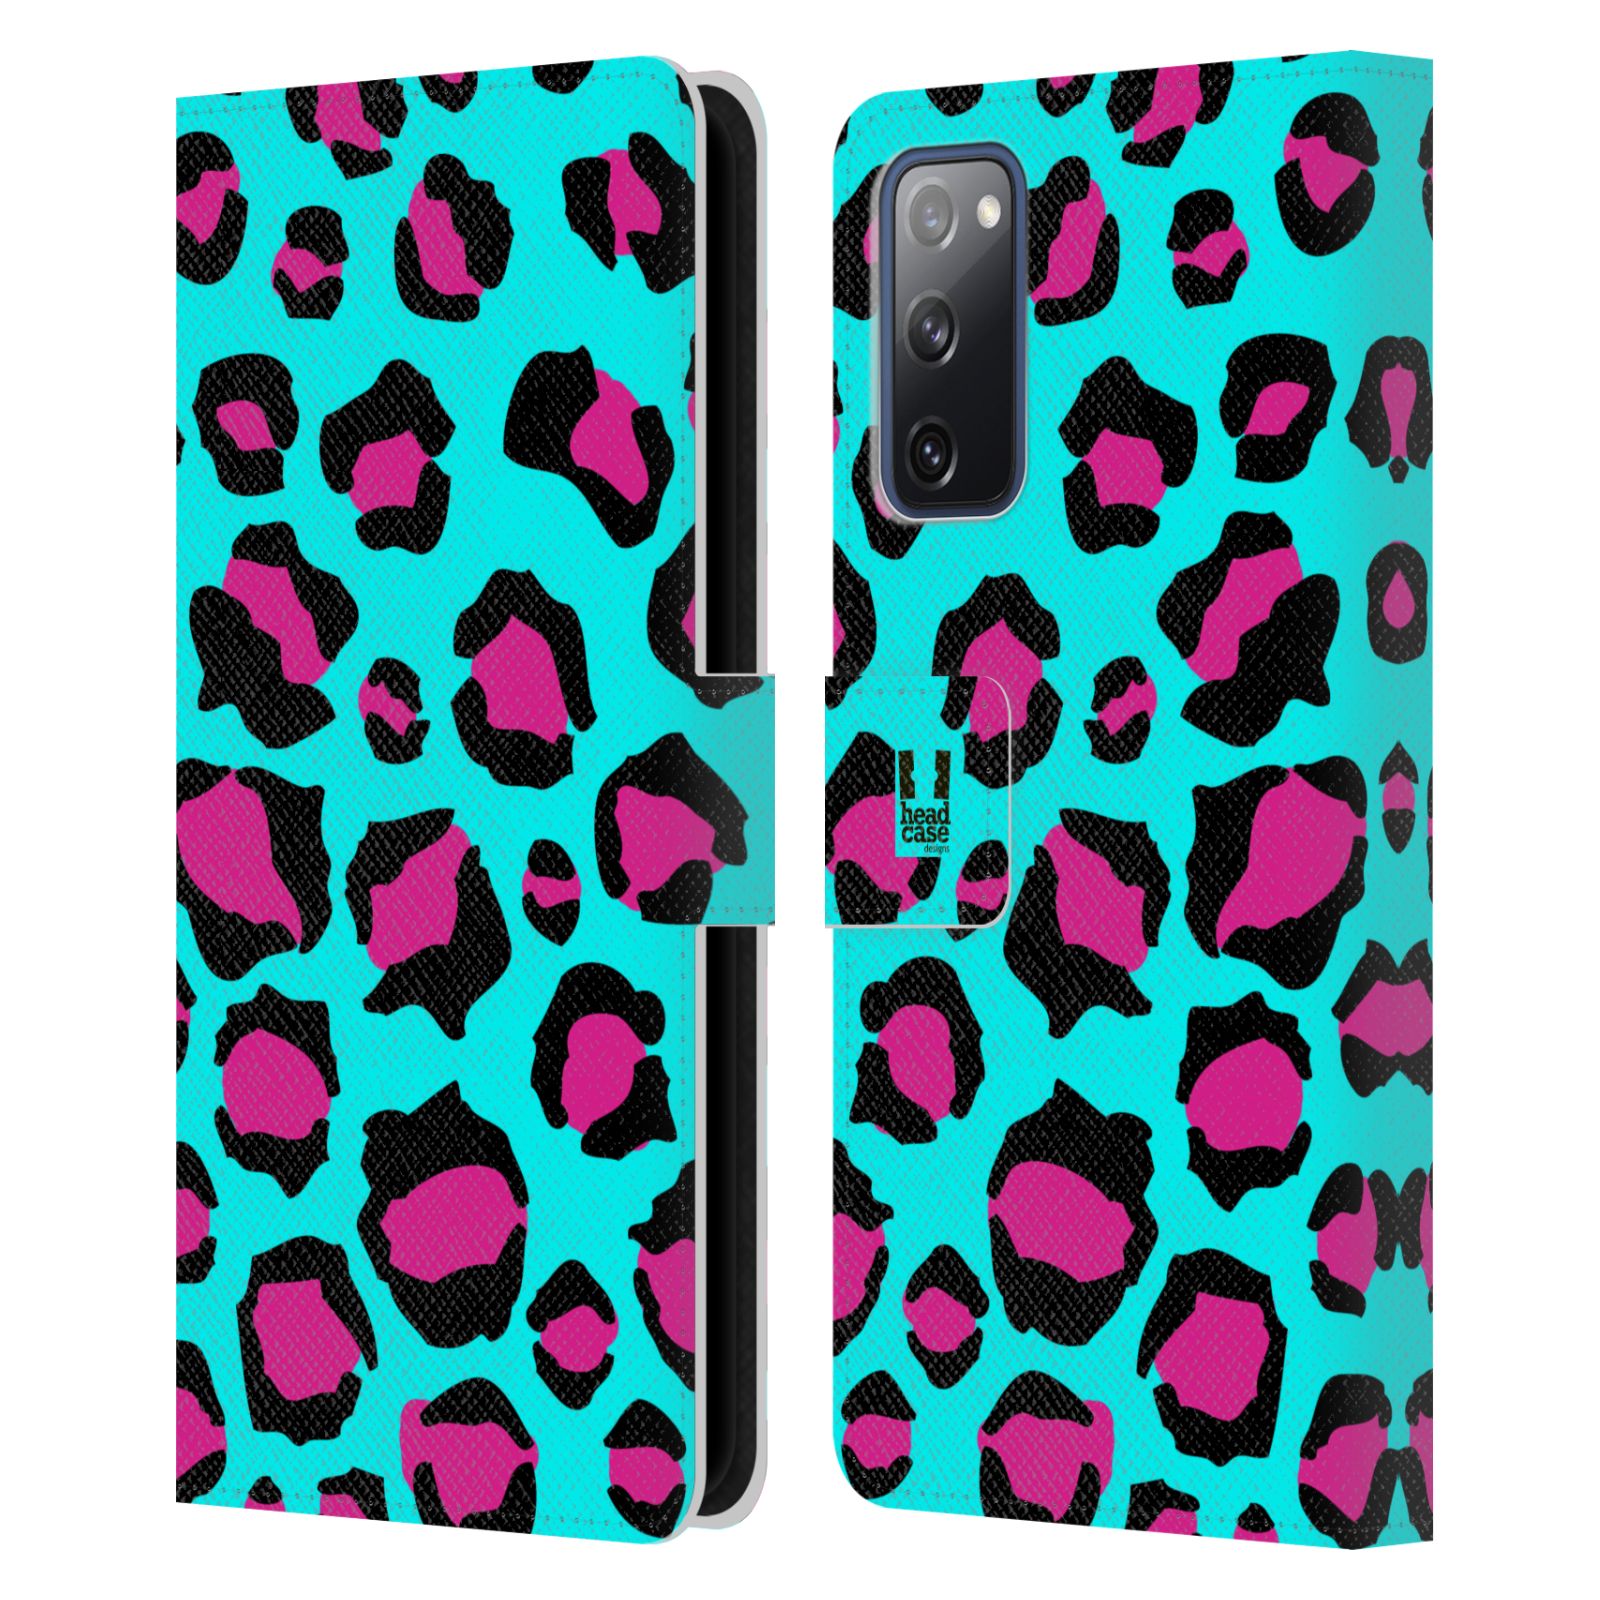 Pouzdro HEAD CASE na mobil Samsung Galaxy S20 FE / S20 FE 5G Zvířecí barevné vzory tyrkysový leopard